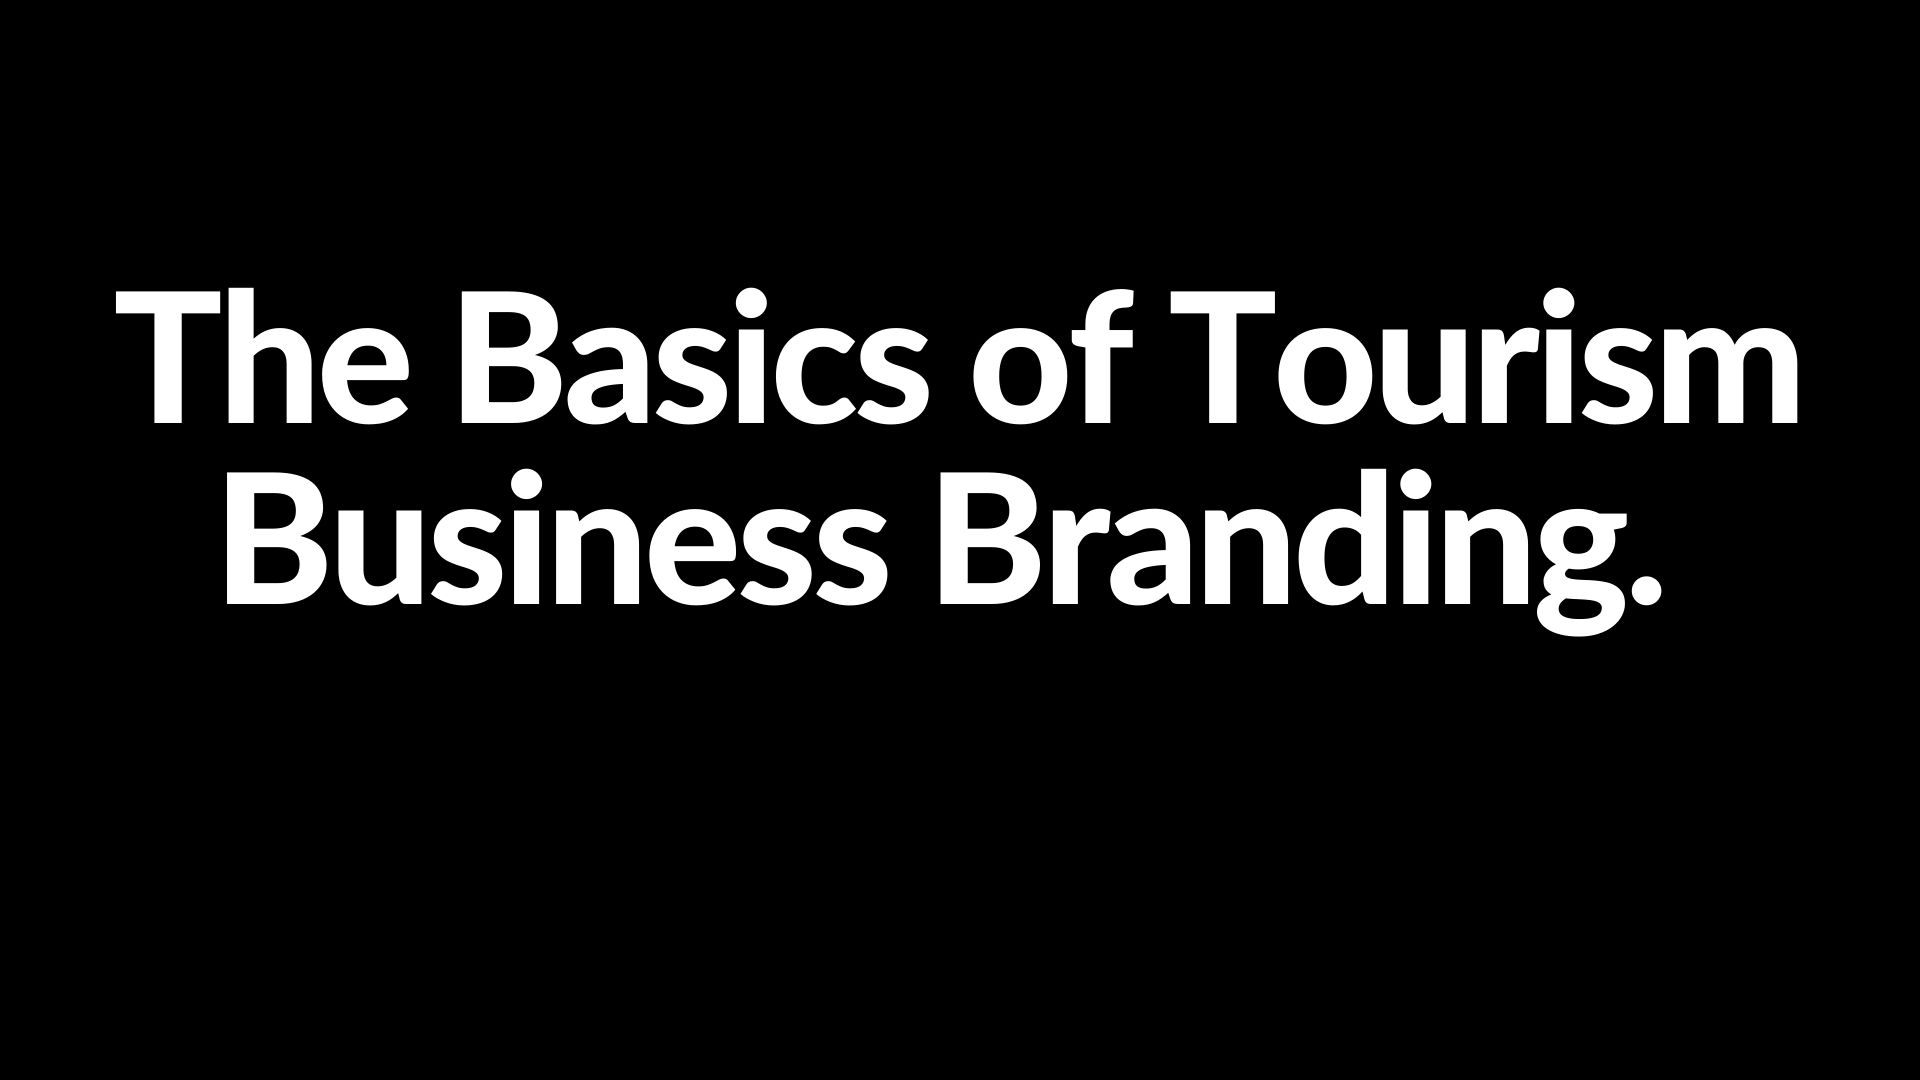 Tourism Business Brand